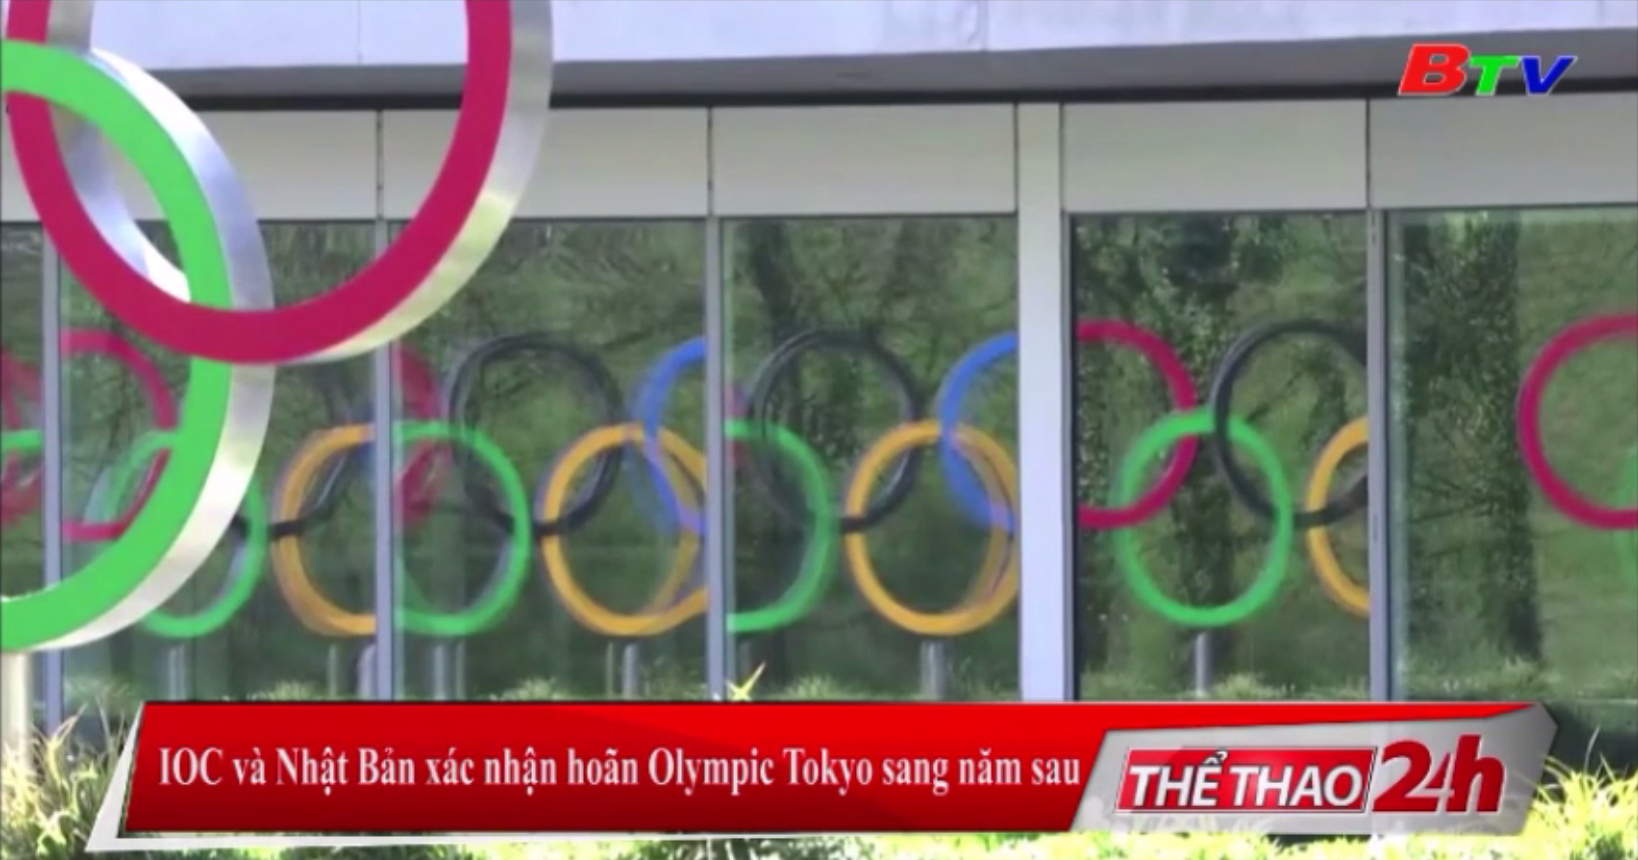 IOC và Nhật Bản xác nhận hoãn Olympic Tokyo sang năm sau